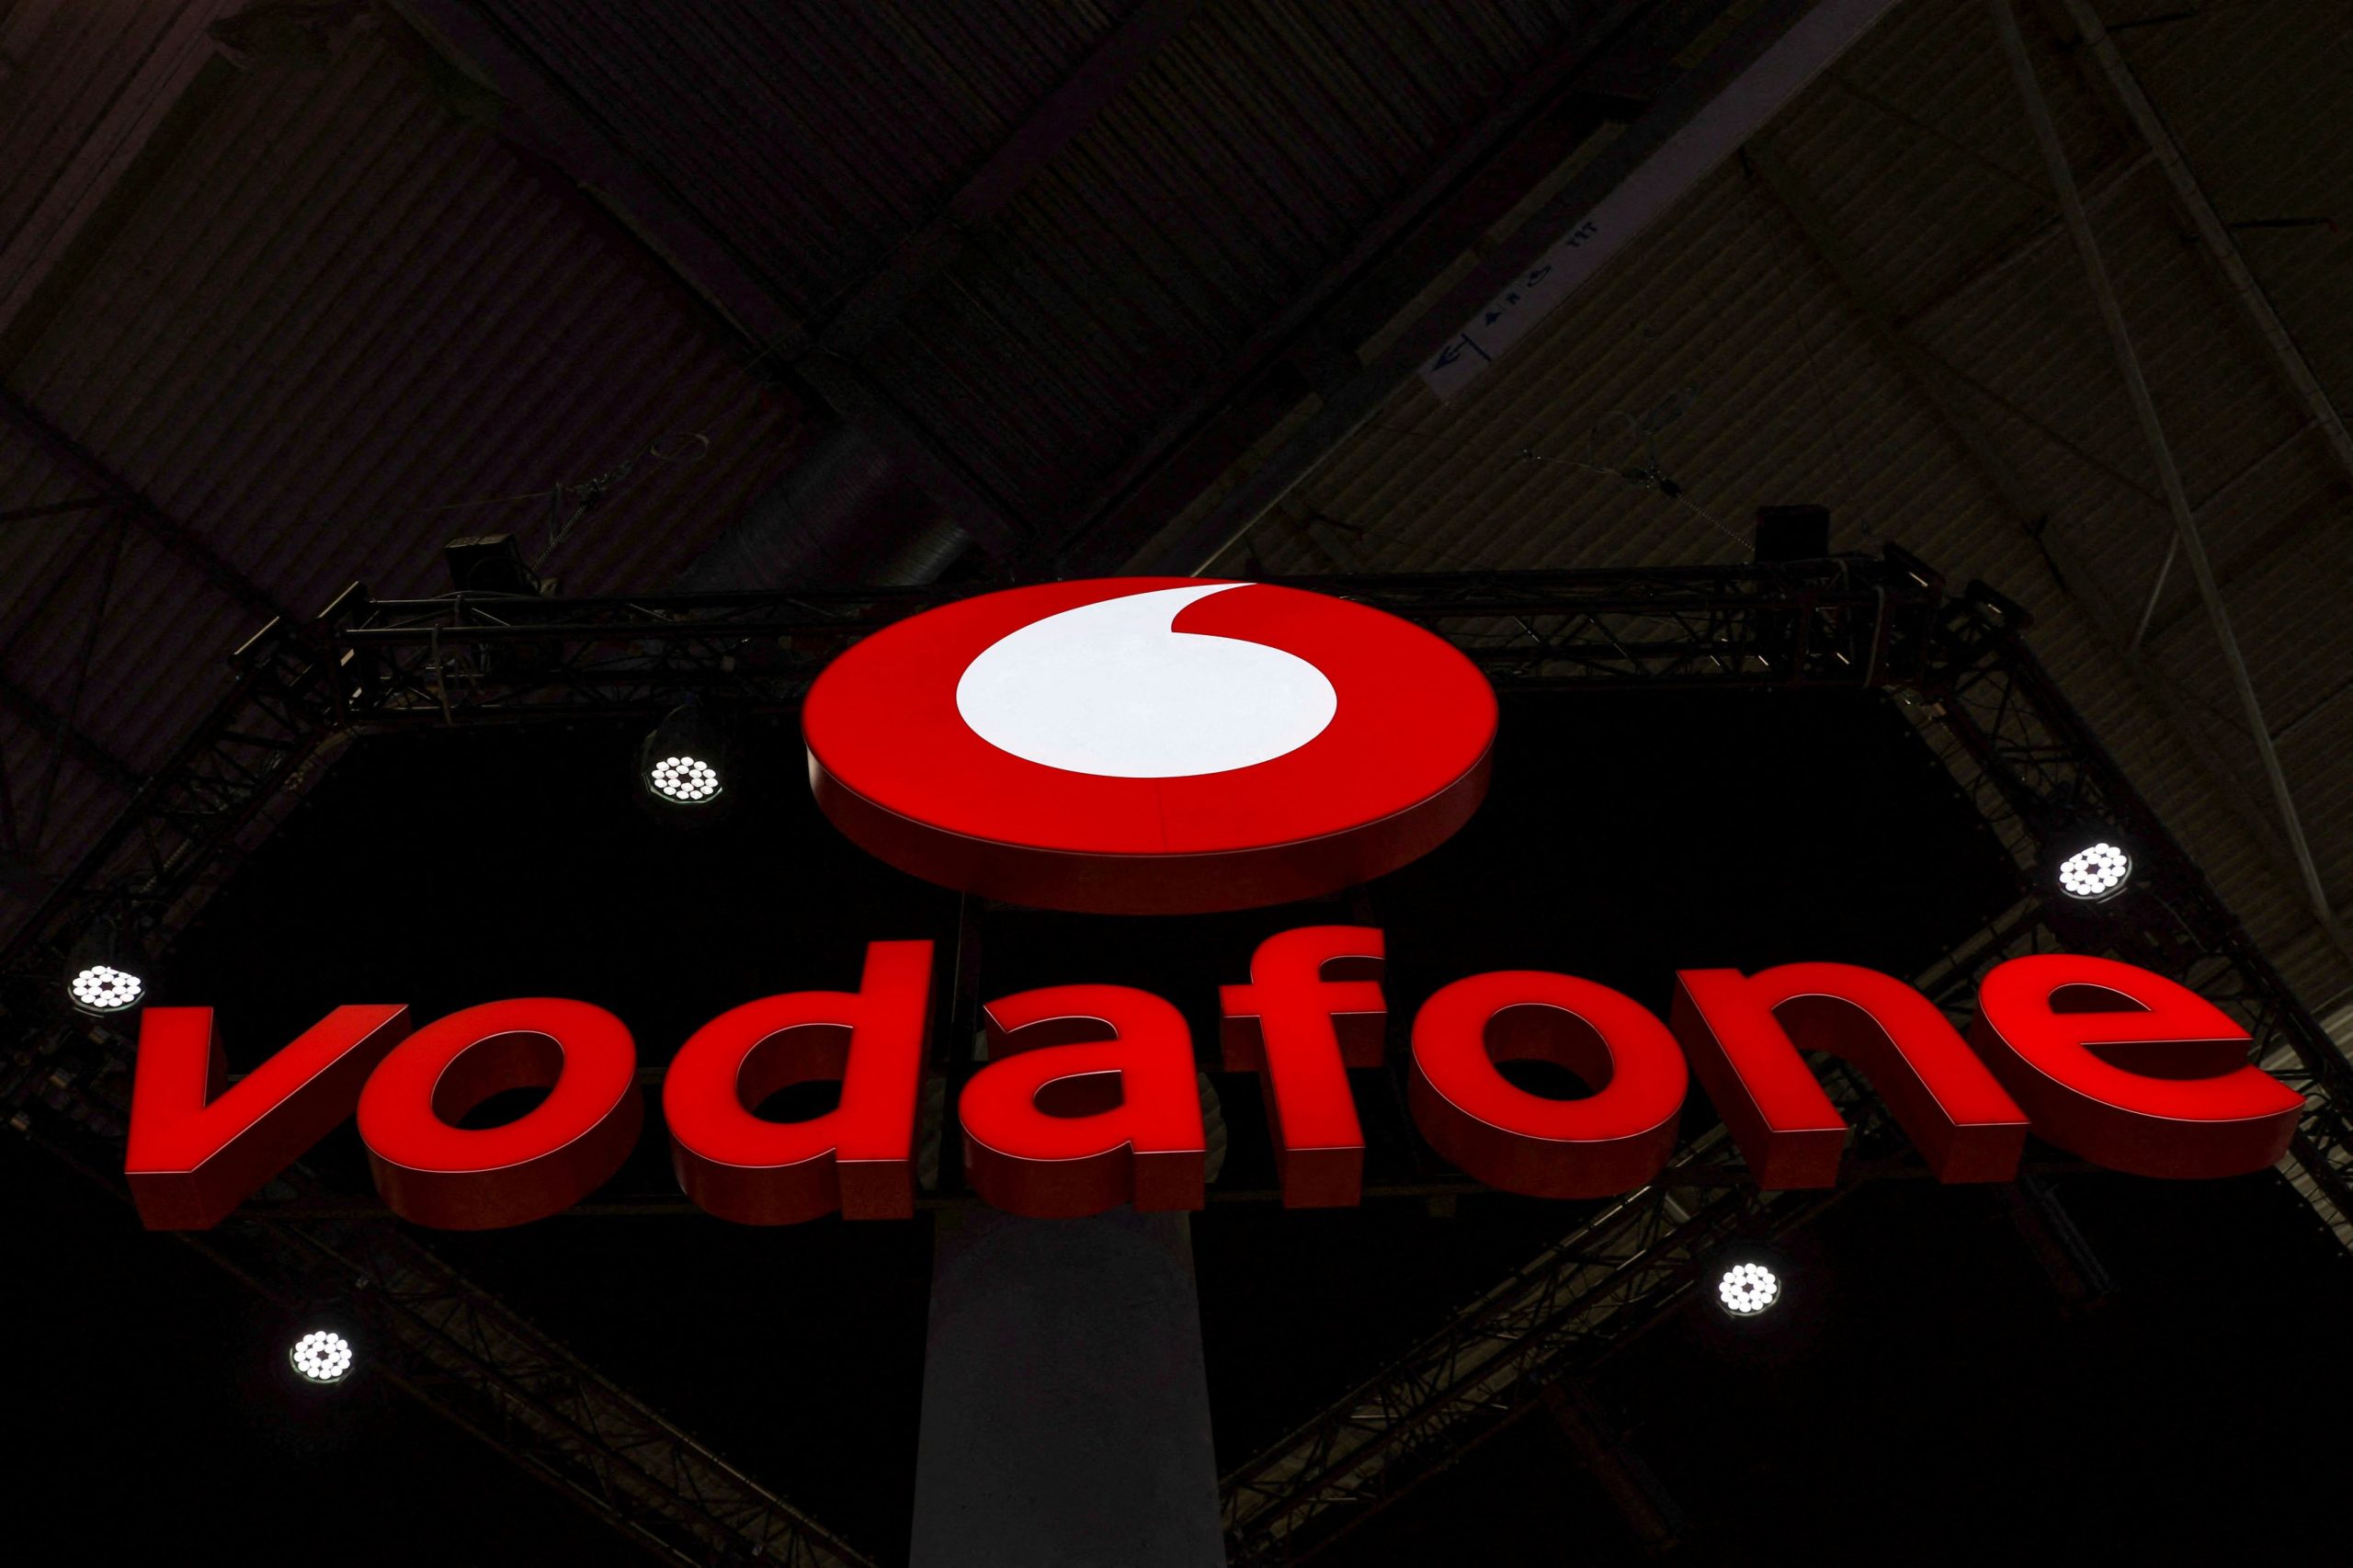 Ιταλία: Διαπραγματεύσεις Vodafone – Swisscom – Στα σκαριά deal 8 δισ. στις τηλεπικοινωνίες